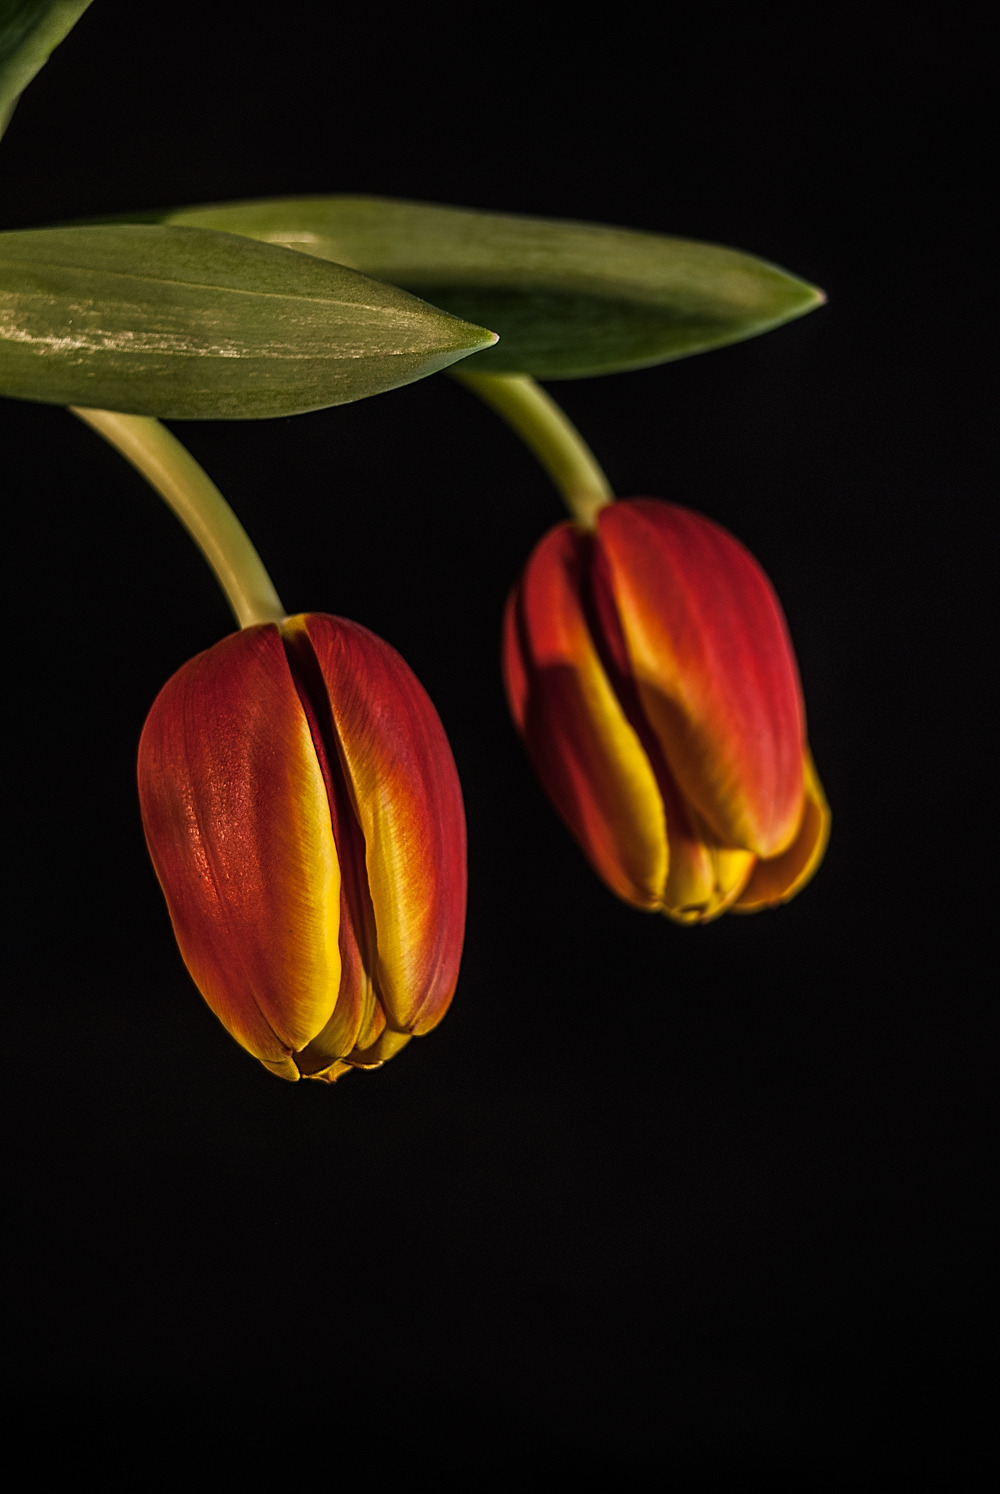 bdesannorat:  135 · REPRISE   Exercici amb tulipes bicolor i fons negre· Ejercicio